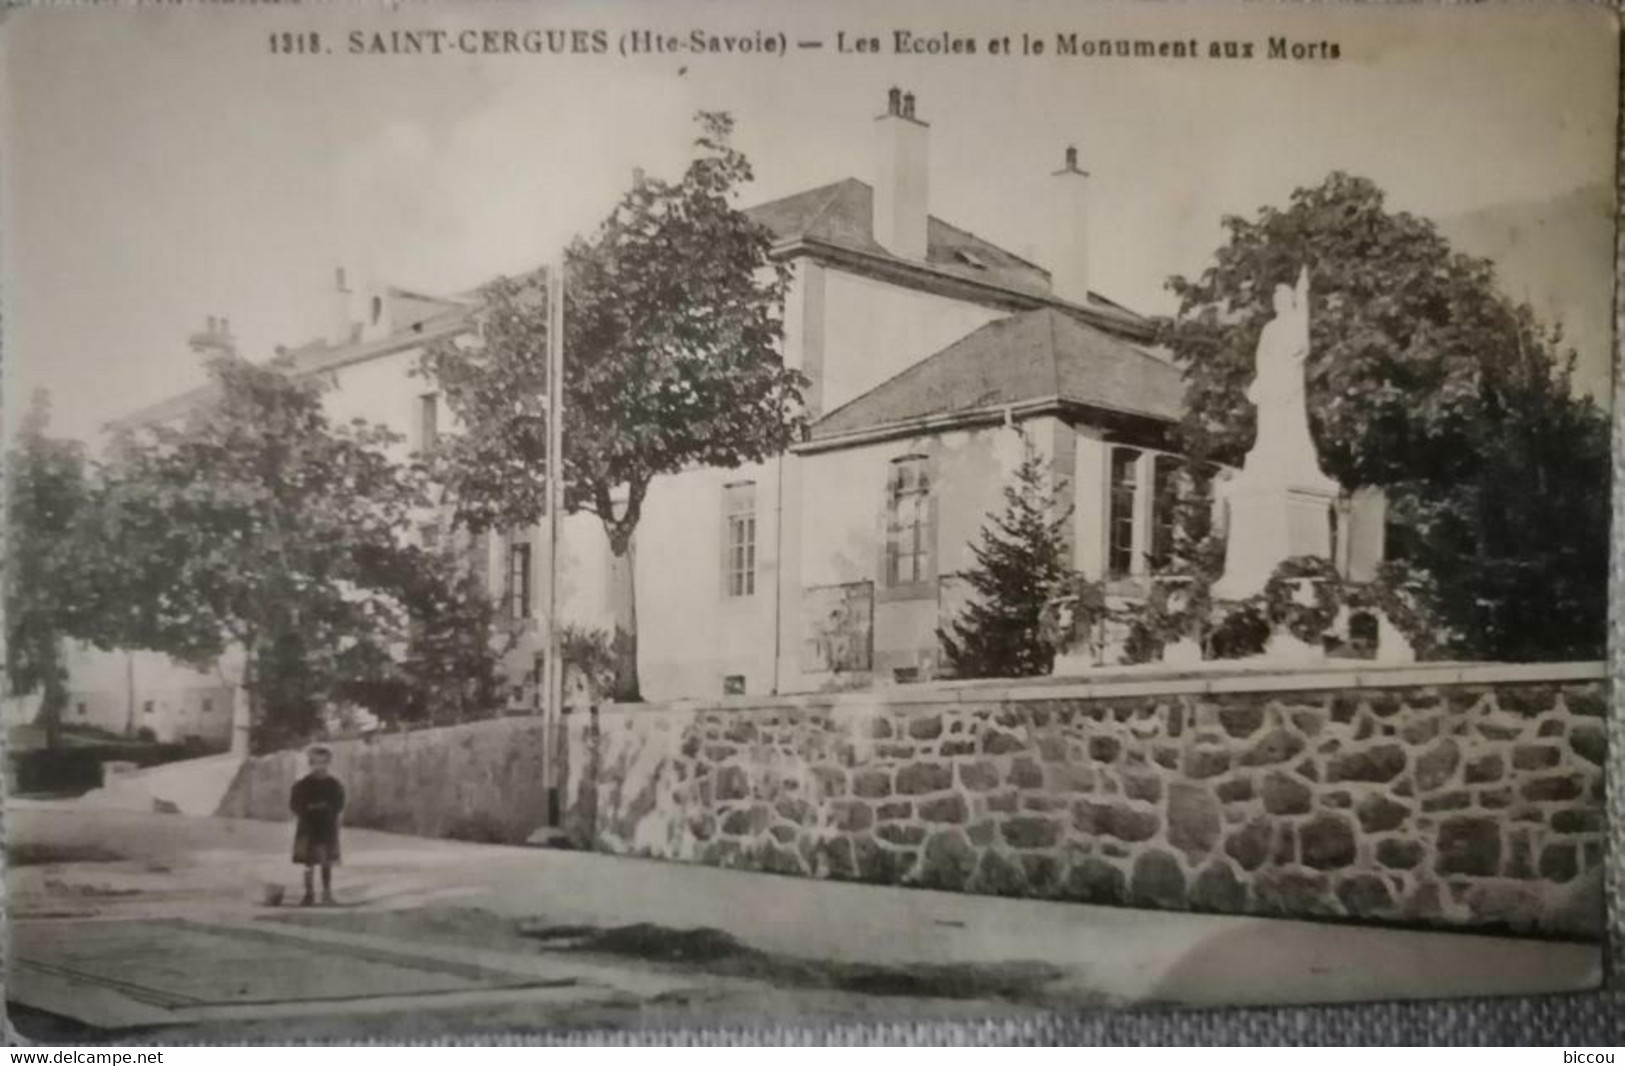 Cpa SAINT-CERGUES (Hte-Savoie) 74 - Les Ecoles Et Le Monument Aux Morts N° 1318 - Saint-Cergues